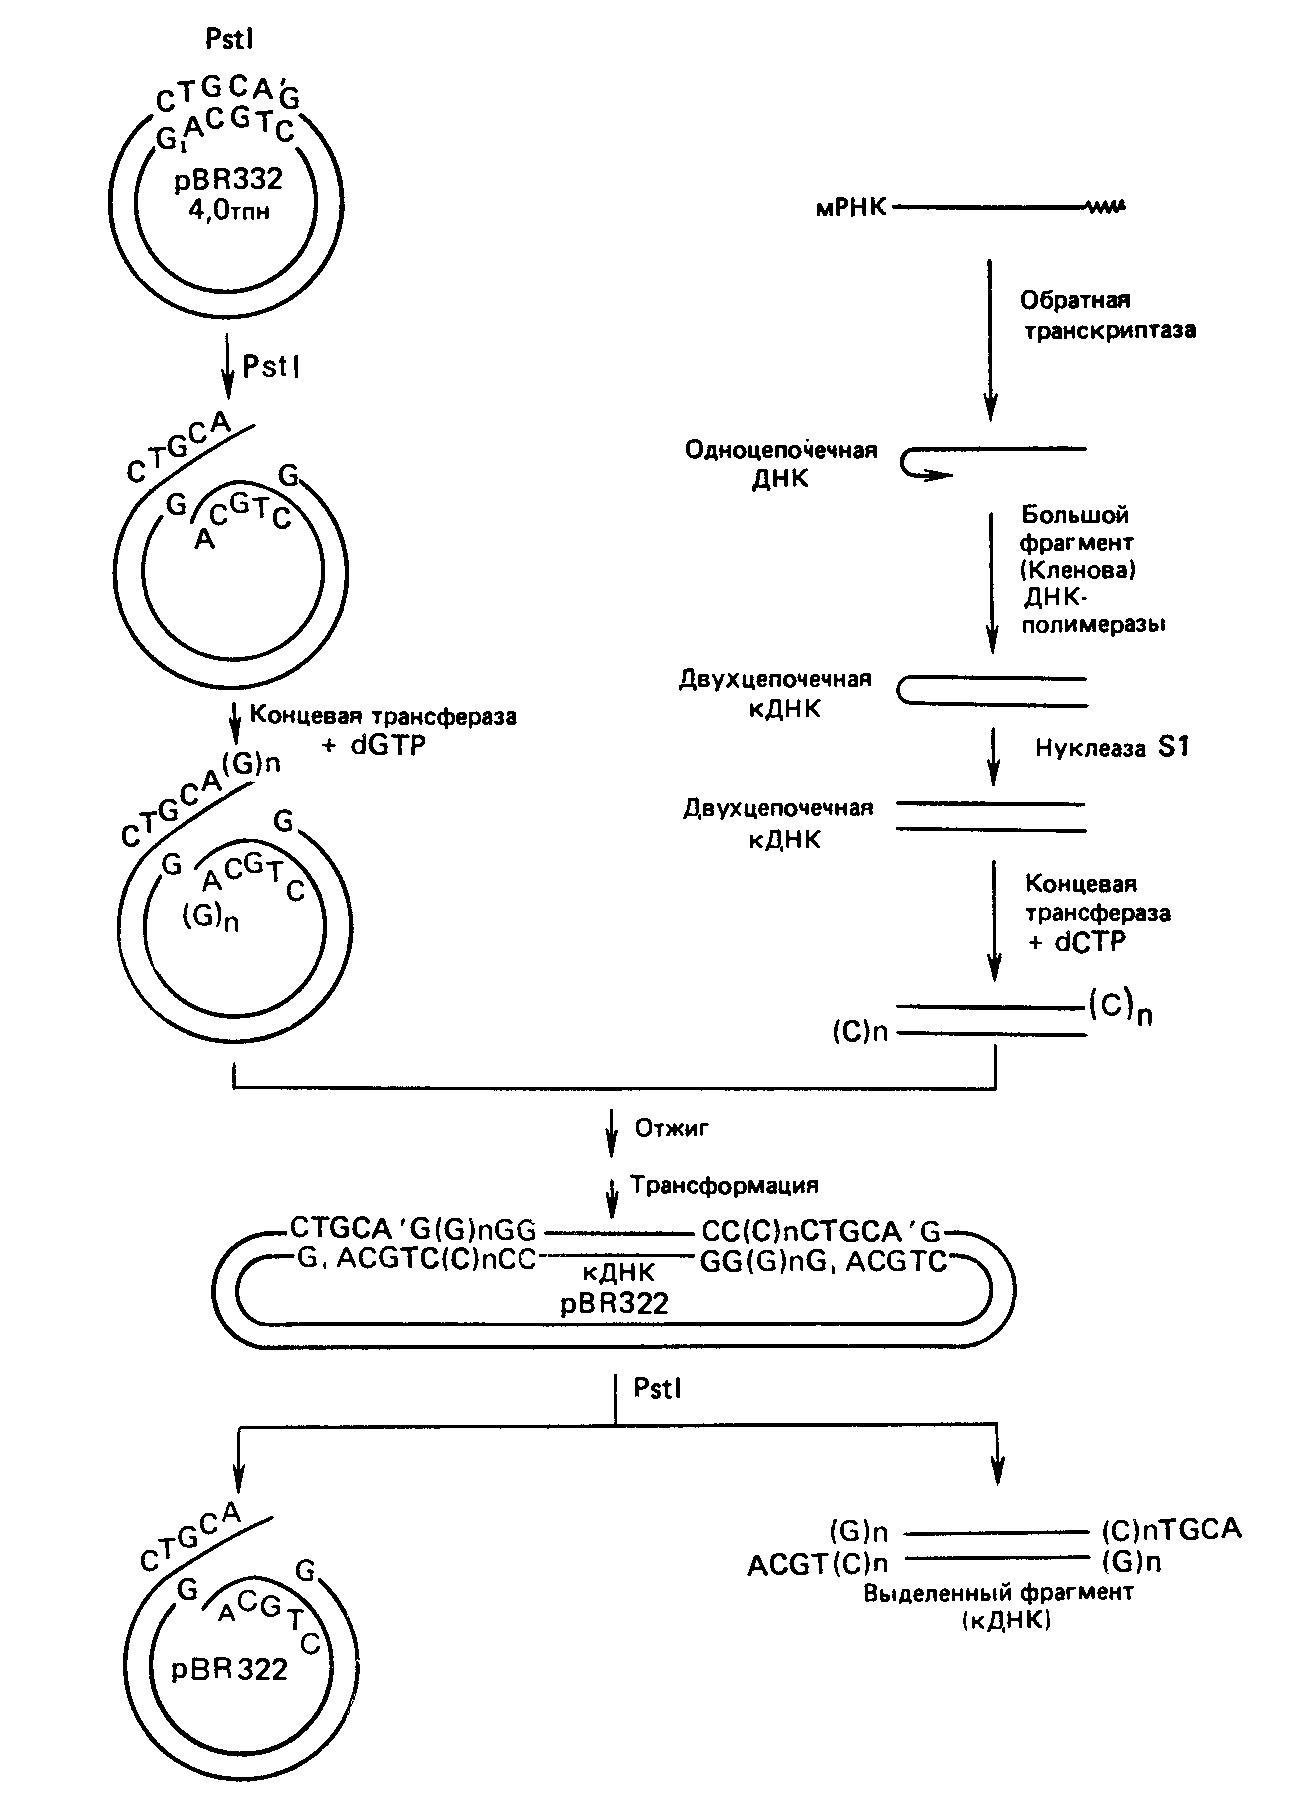 Методы генетической инженерии и клонирование кДНК